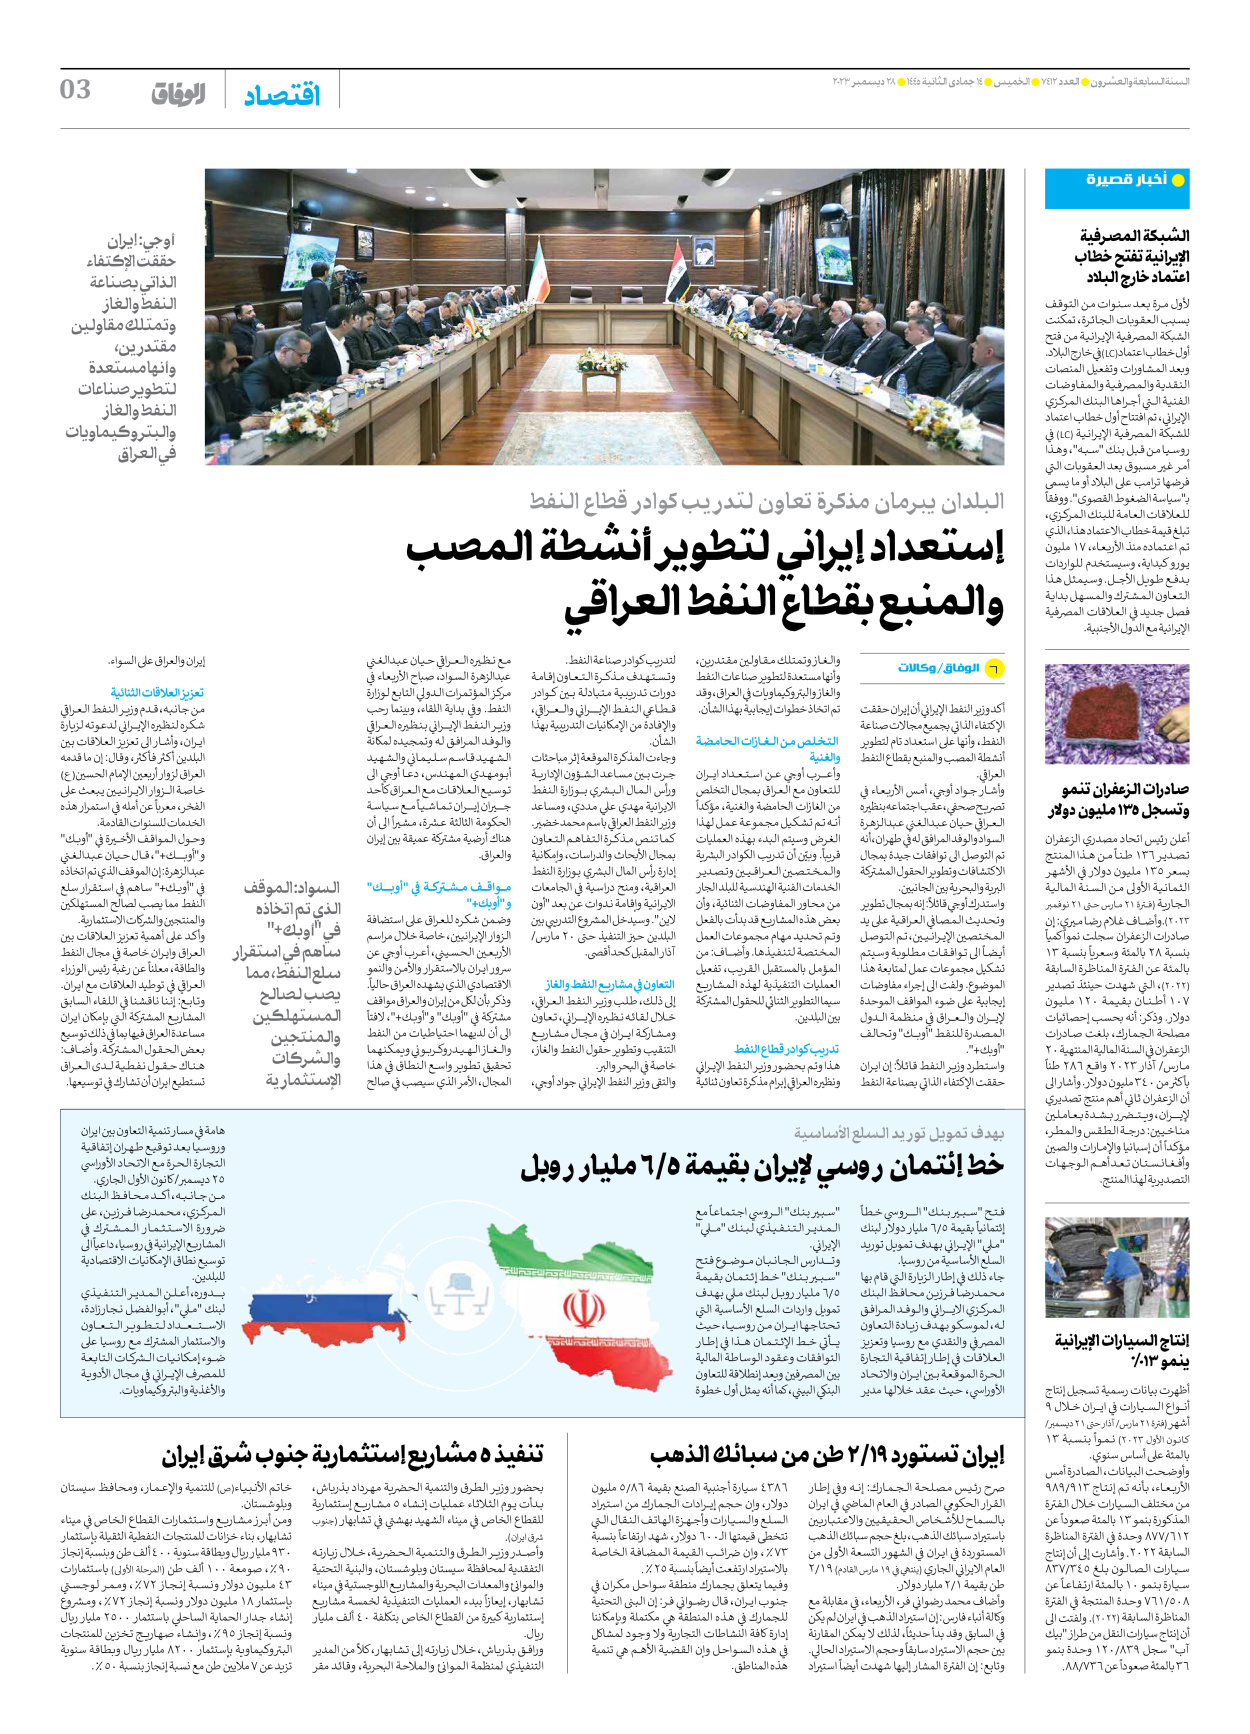 صحیفة ایران الدولیة الوفاق - العدد سبعة آلاف وأربعمائة واثنا عشر - ٢٨ ديسمبر ٢٠٢٣ - الصفحة ۳